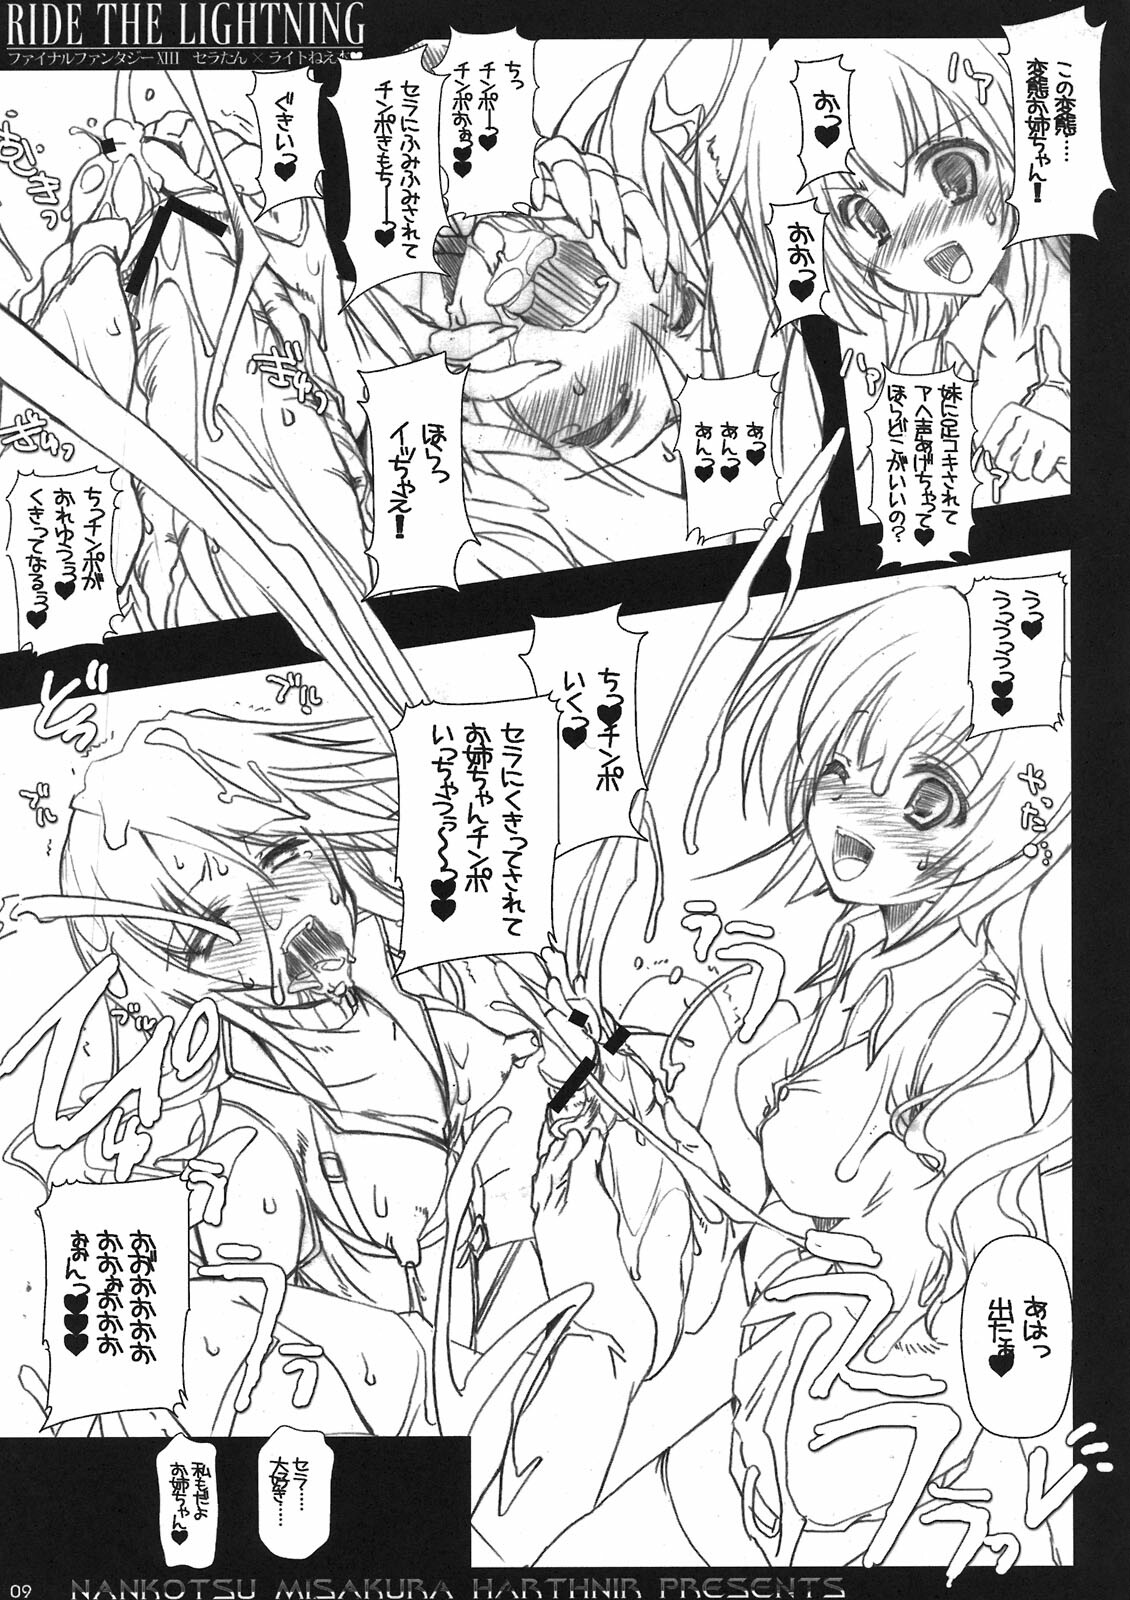 [HarthNir (Misakura Nankotsu)] RIDE THE LIGHTNING (Final Fantasy XIII) page 9 full